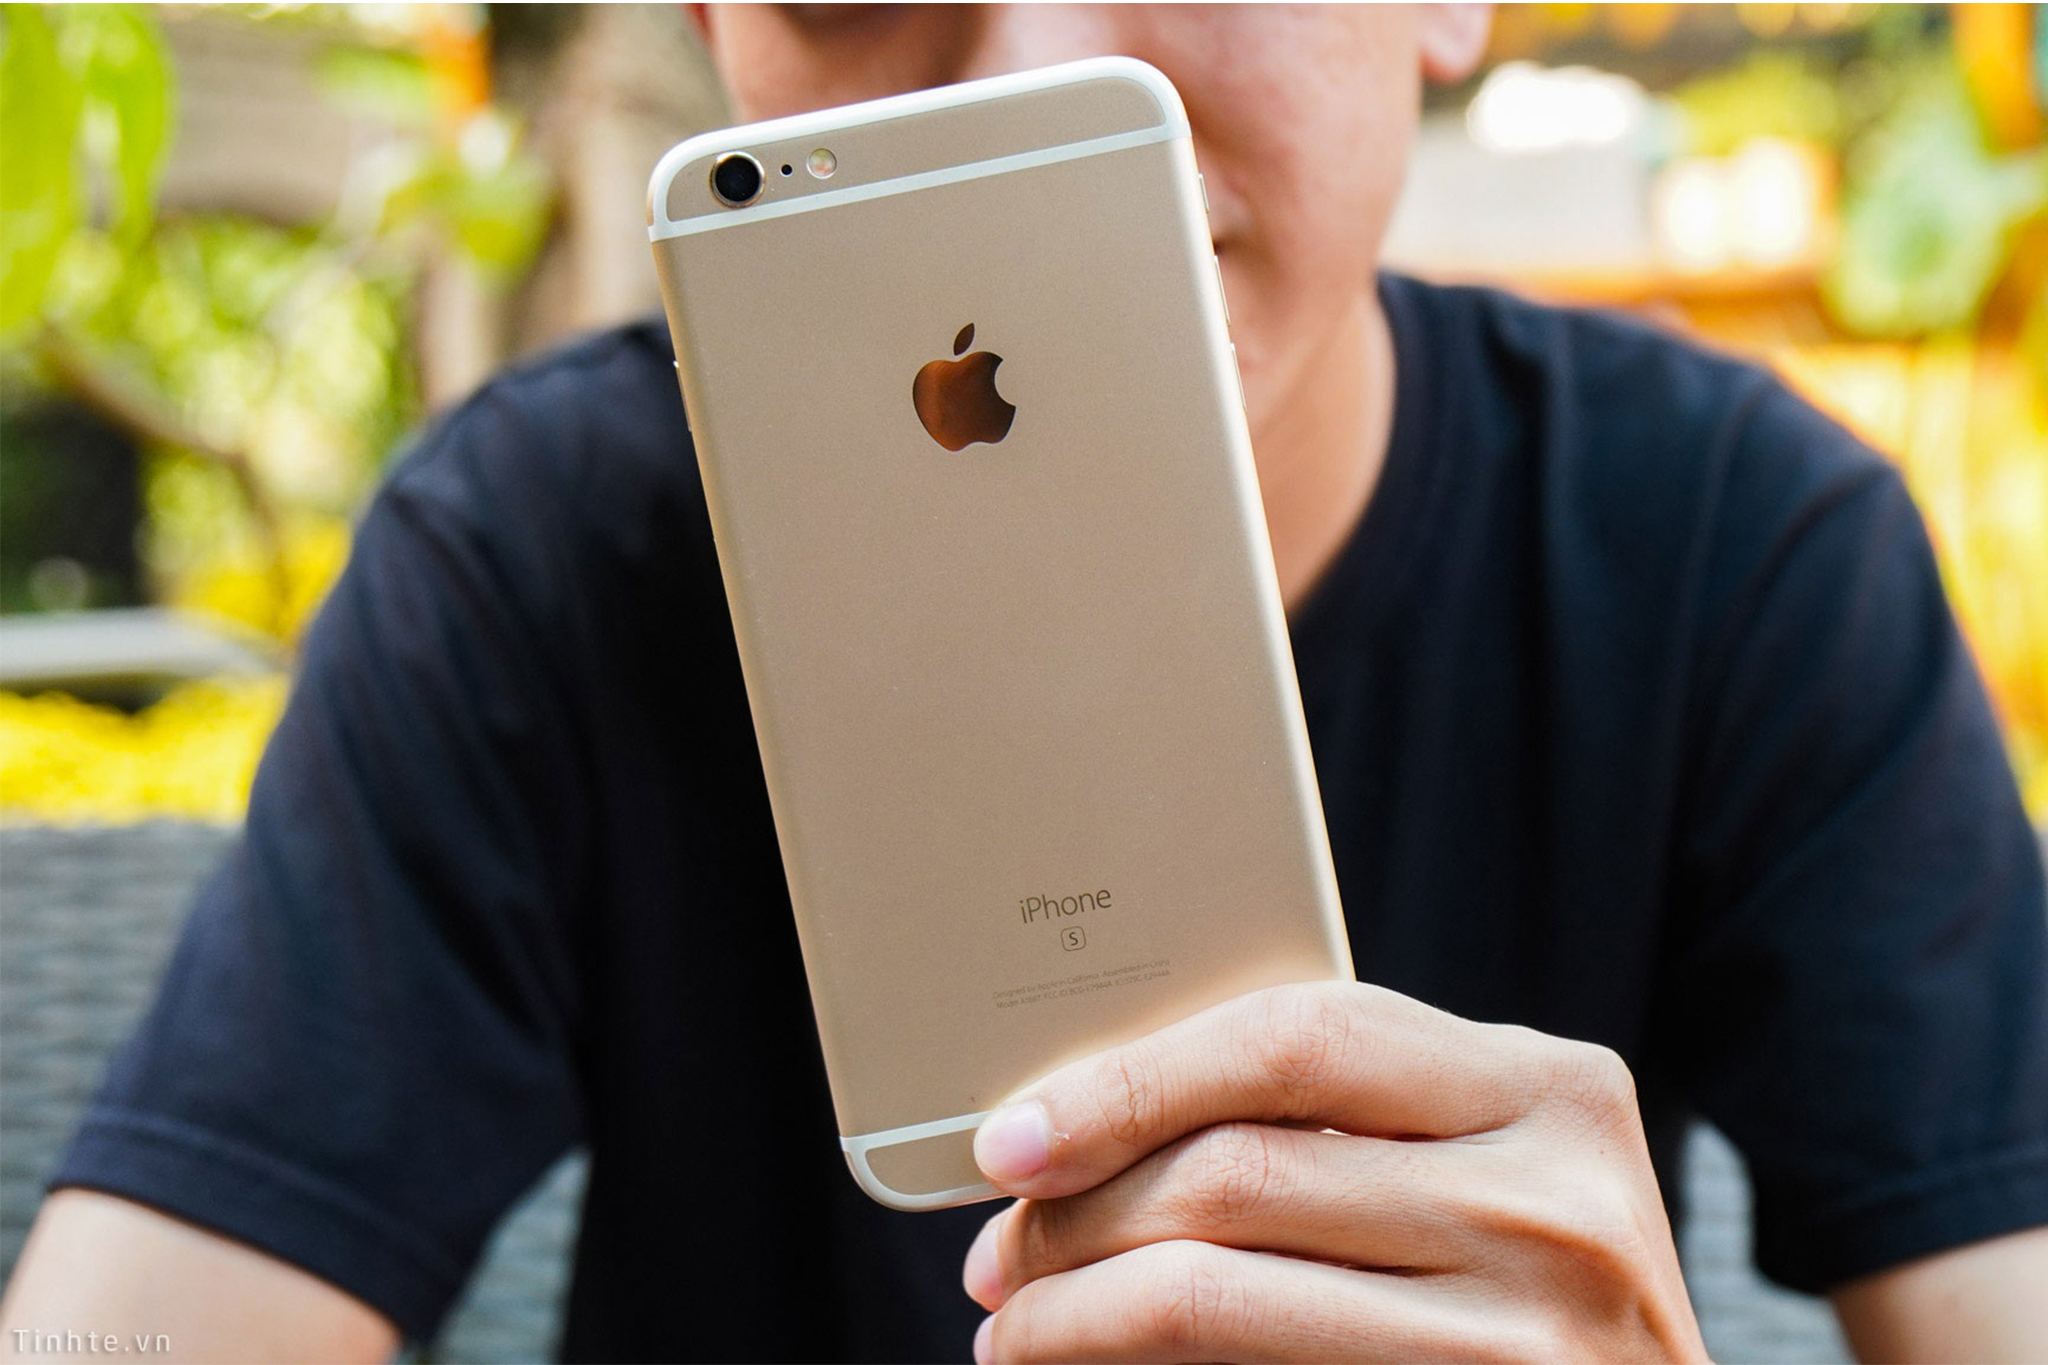 iPhone 6s Plus - Một sự lựa chọn làm quà cho ba mẹ dịp Tết